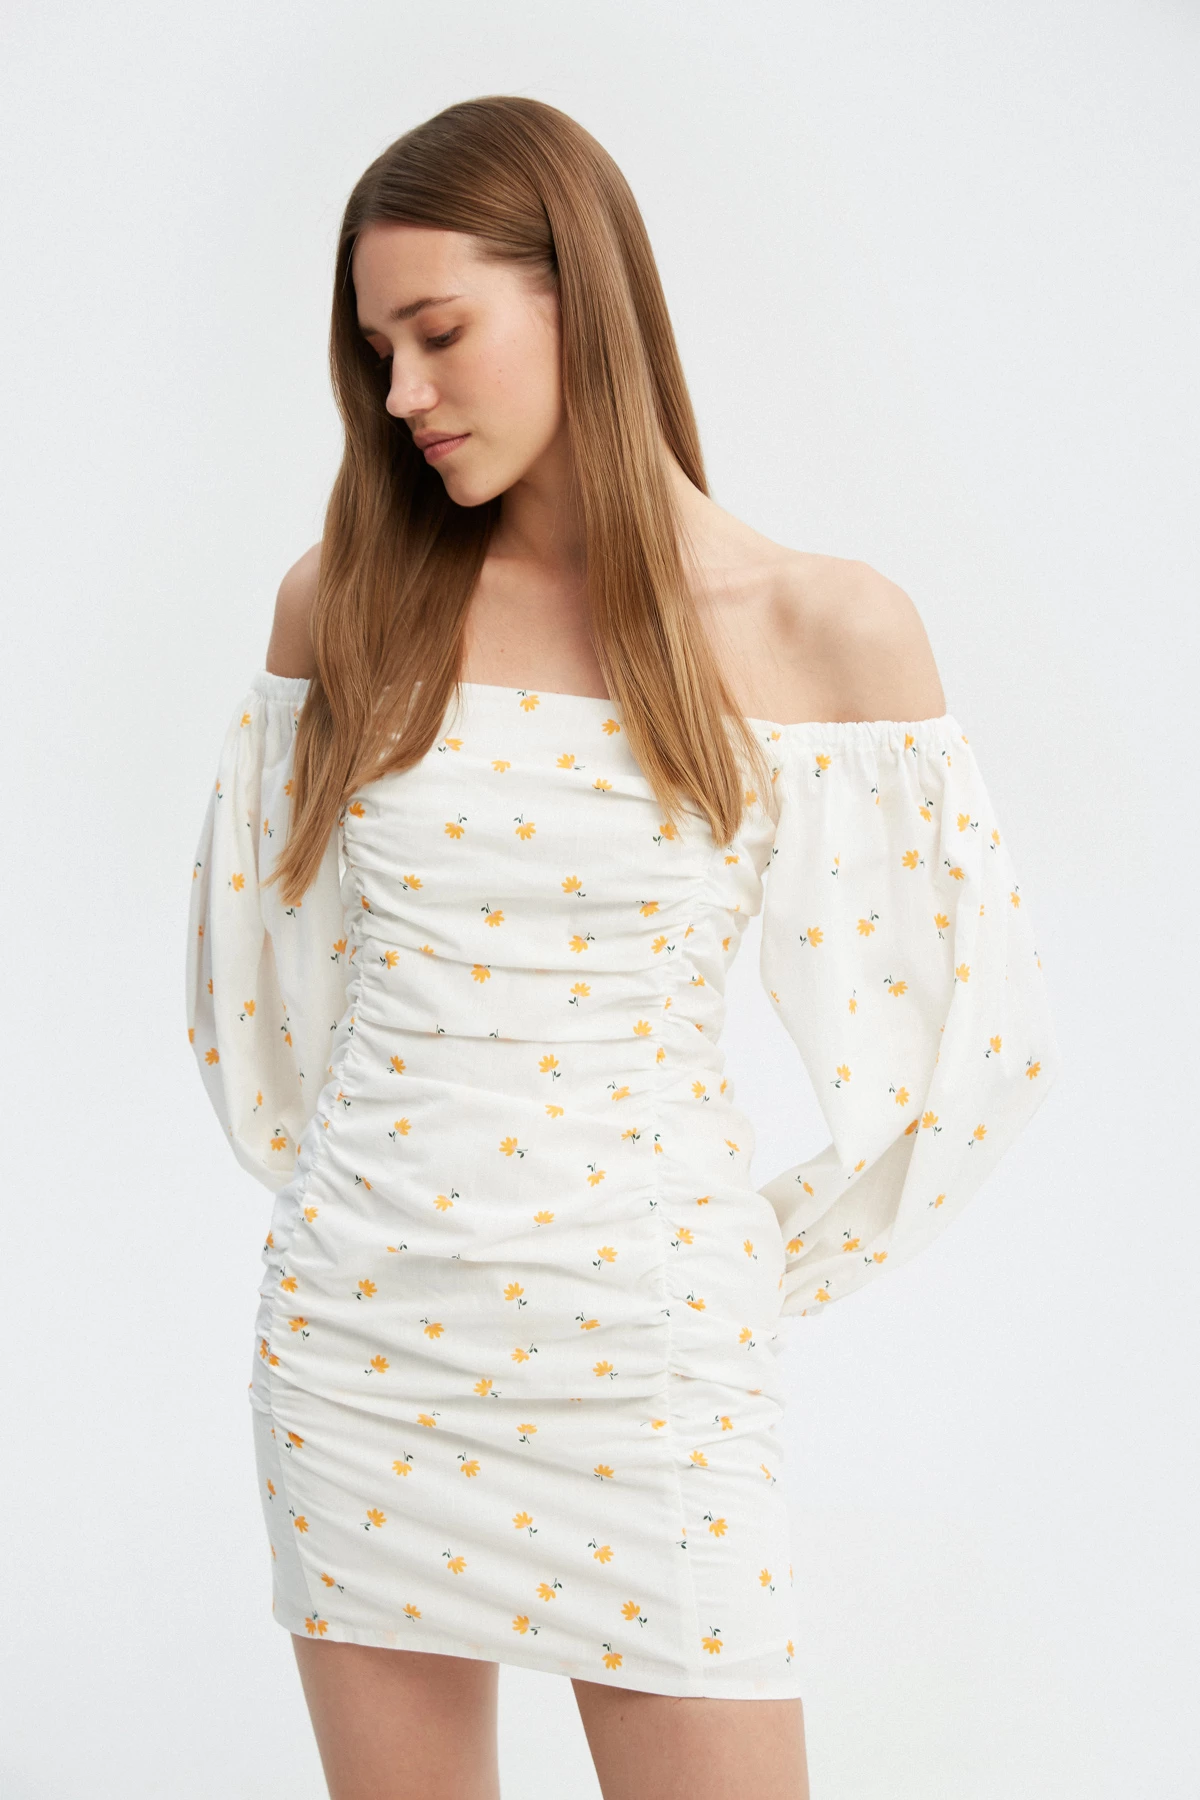 Біла сукня з драпіруванням з бавовни в авторський принт жовті квіти , фото 4